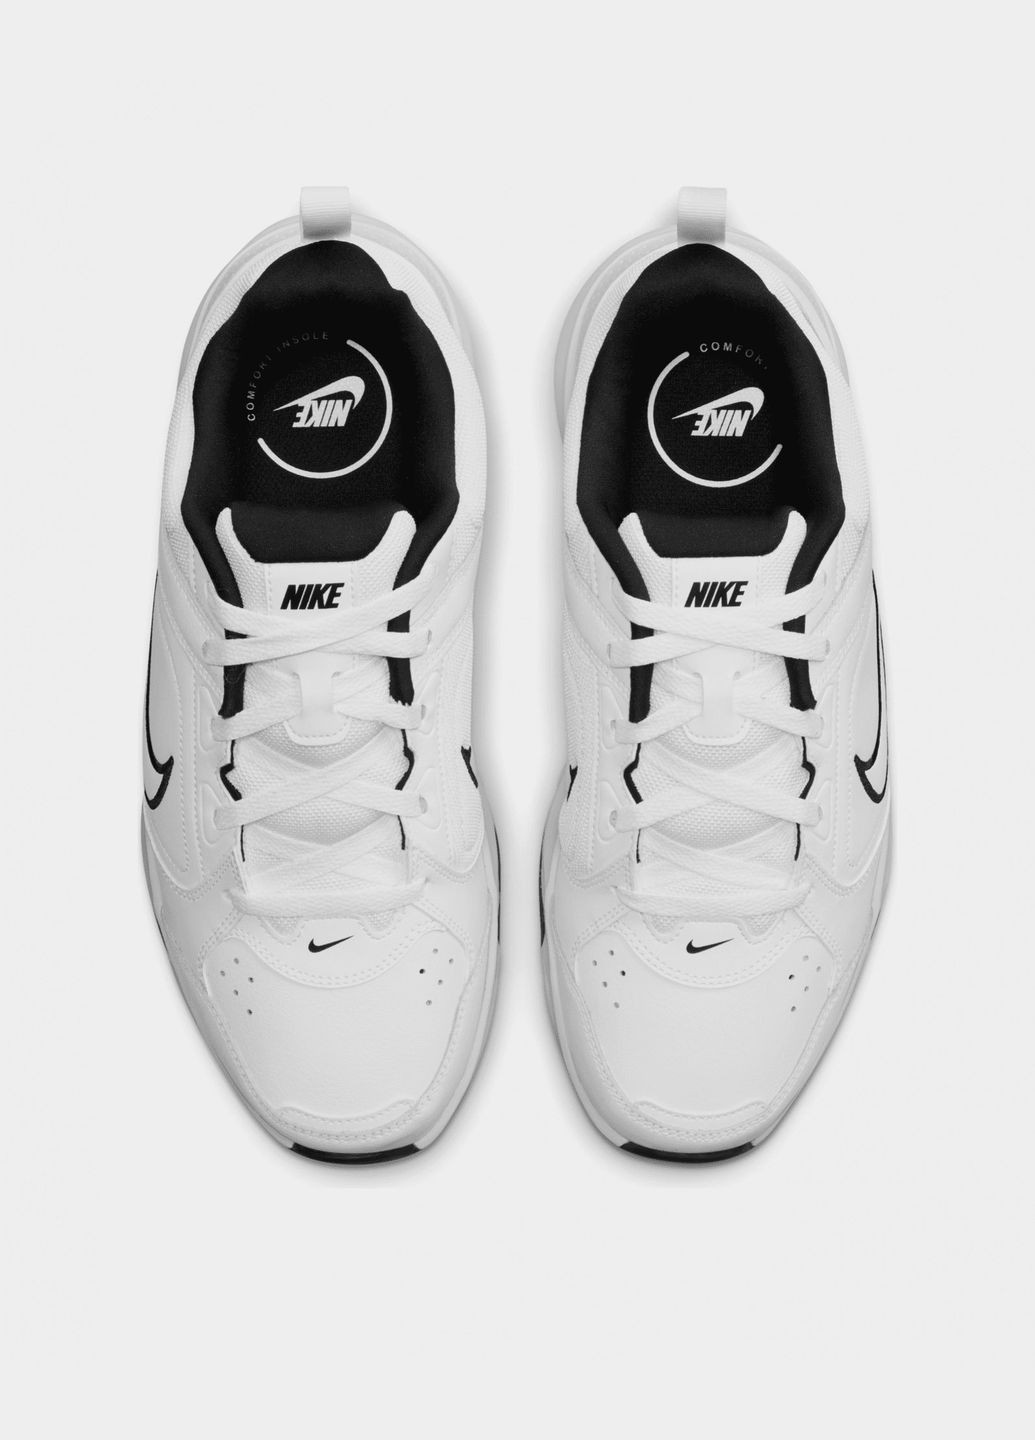 Білі всесезон кросівки чоловічі defy all day dm7564-100 весна-осінь шкіра текстиль білі Nike